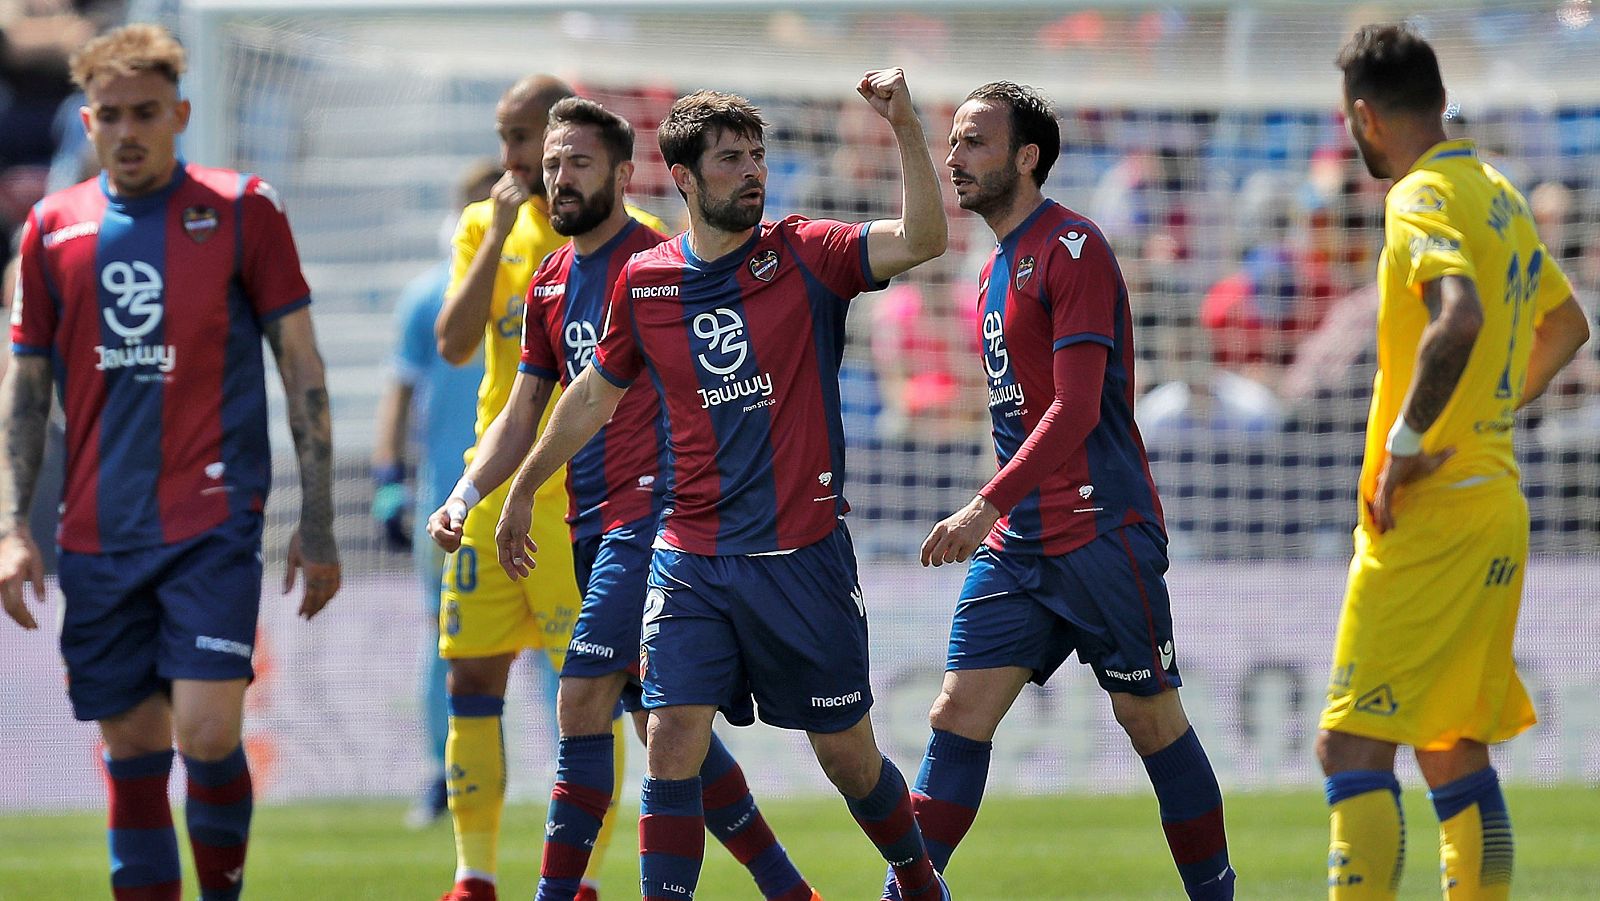 El defensa del Levante "Coke" (c) celebra tras haber marcado el primer gol de su equipo contra el UD Las Palmas.